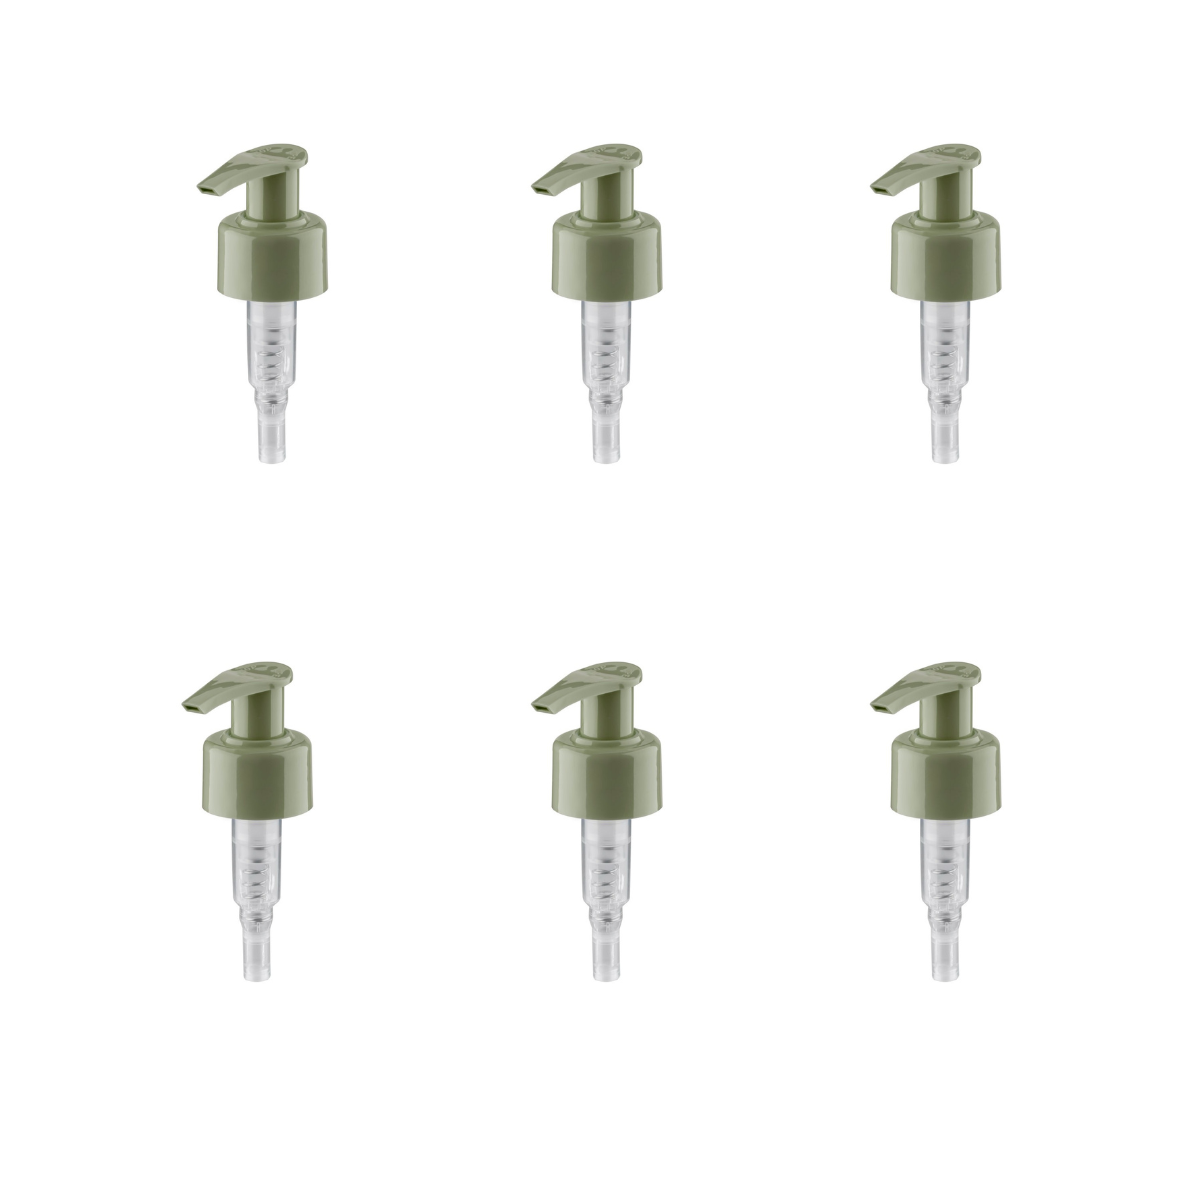 Válvulas Bomba Dompel, color verde amazonia, rosca 28/410, fabricadas con resortes de acero inoxidable y bolas de vidrio, Modelo 303-A1. (Solo cabezales de bomba, botellas no incluidas) - depilcompany